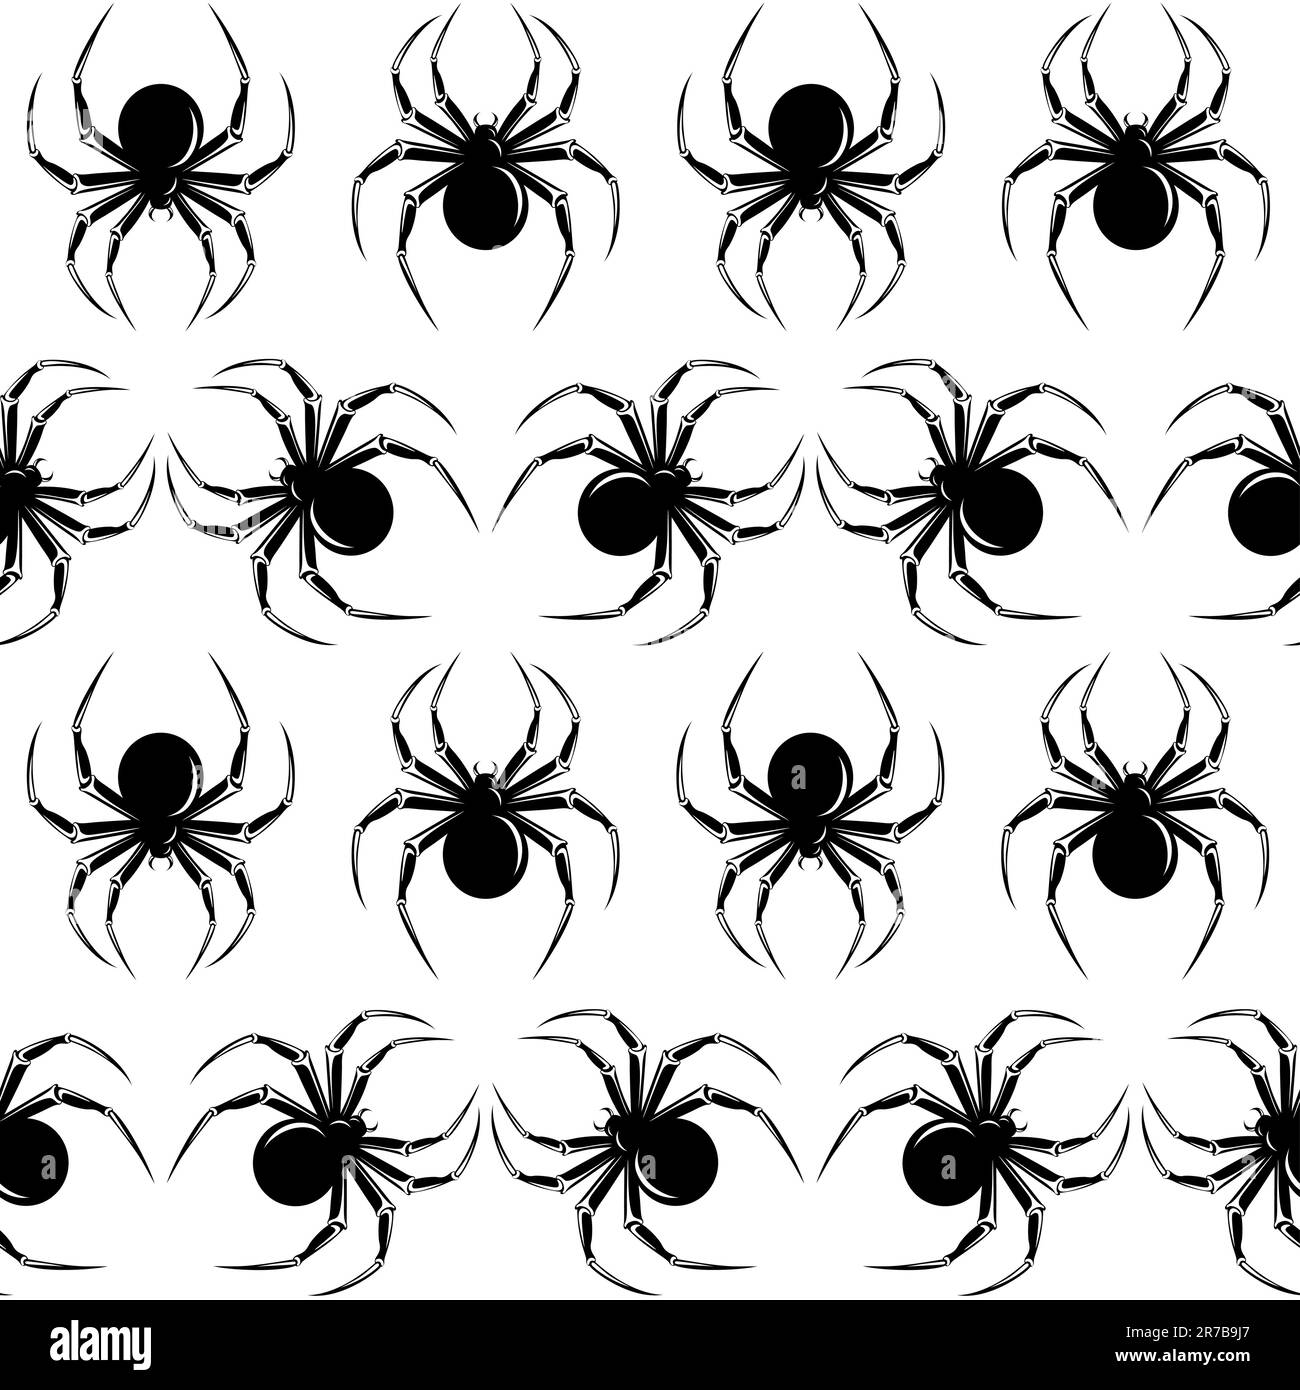 Halloween nahtlos mit schwarzen Spinnen auf weißem Hintergrund Stock Vektor